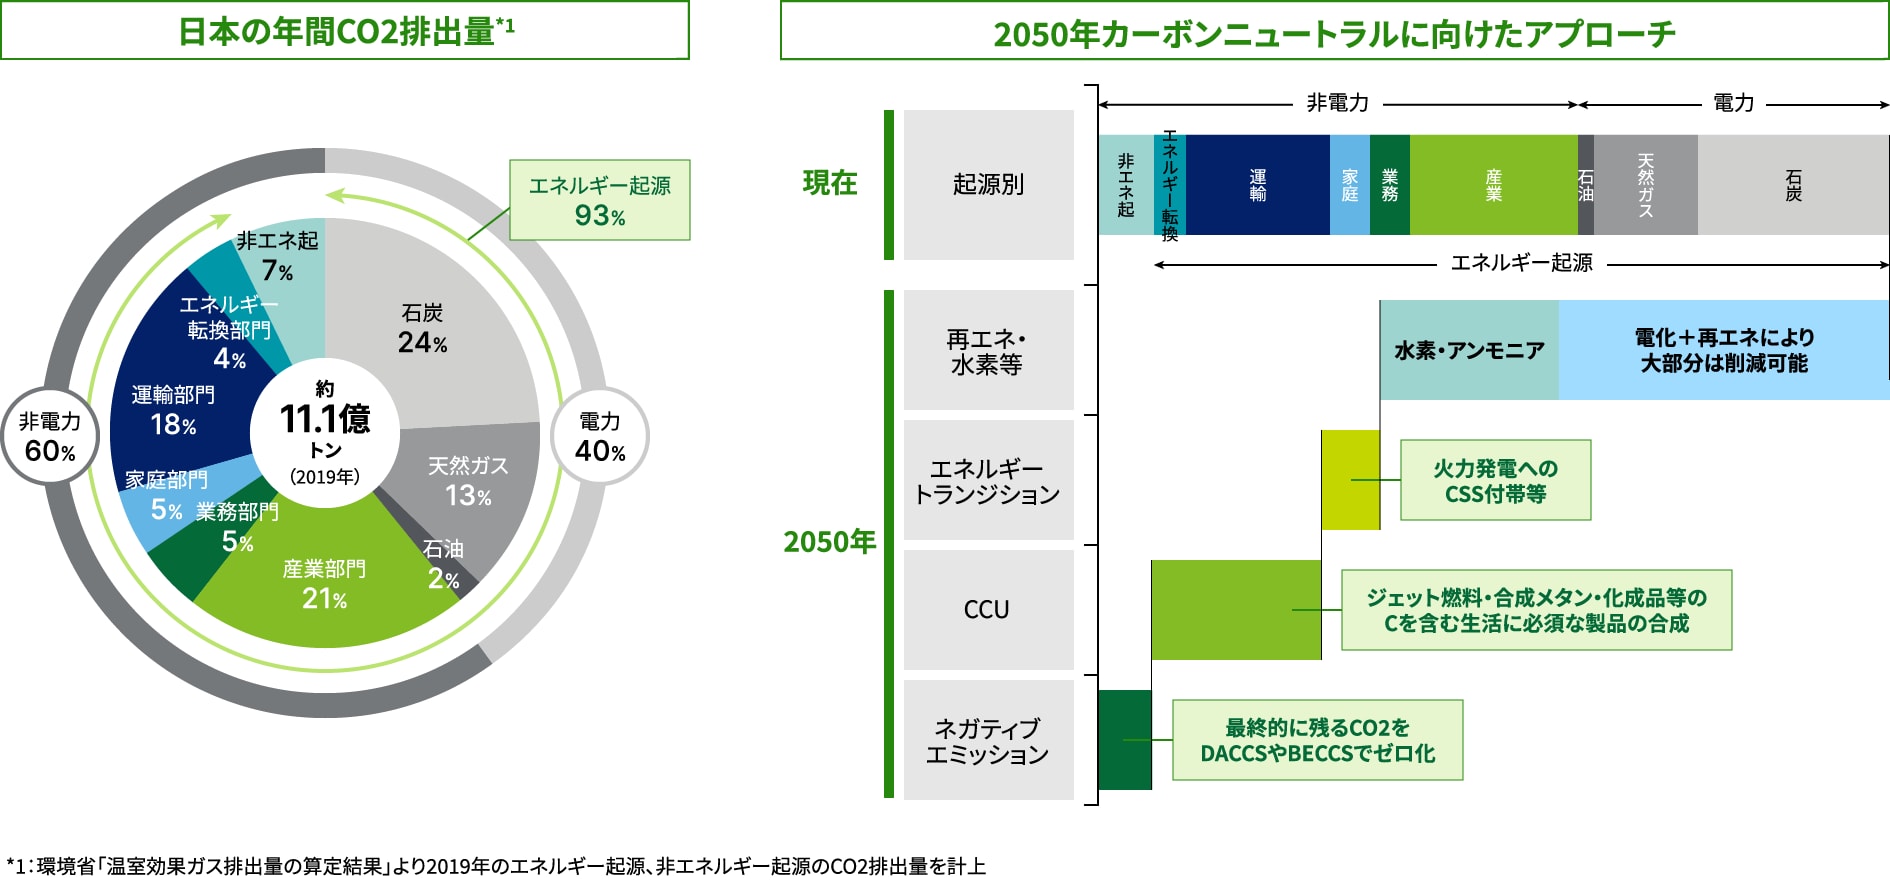 日本の年間CO2排出量で見るネットゼロ社会におけるCCUSの重要性